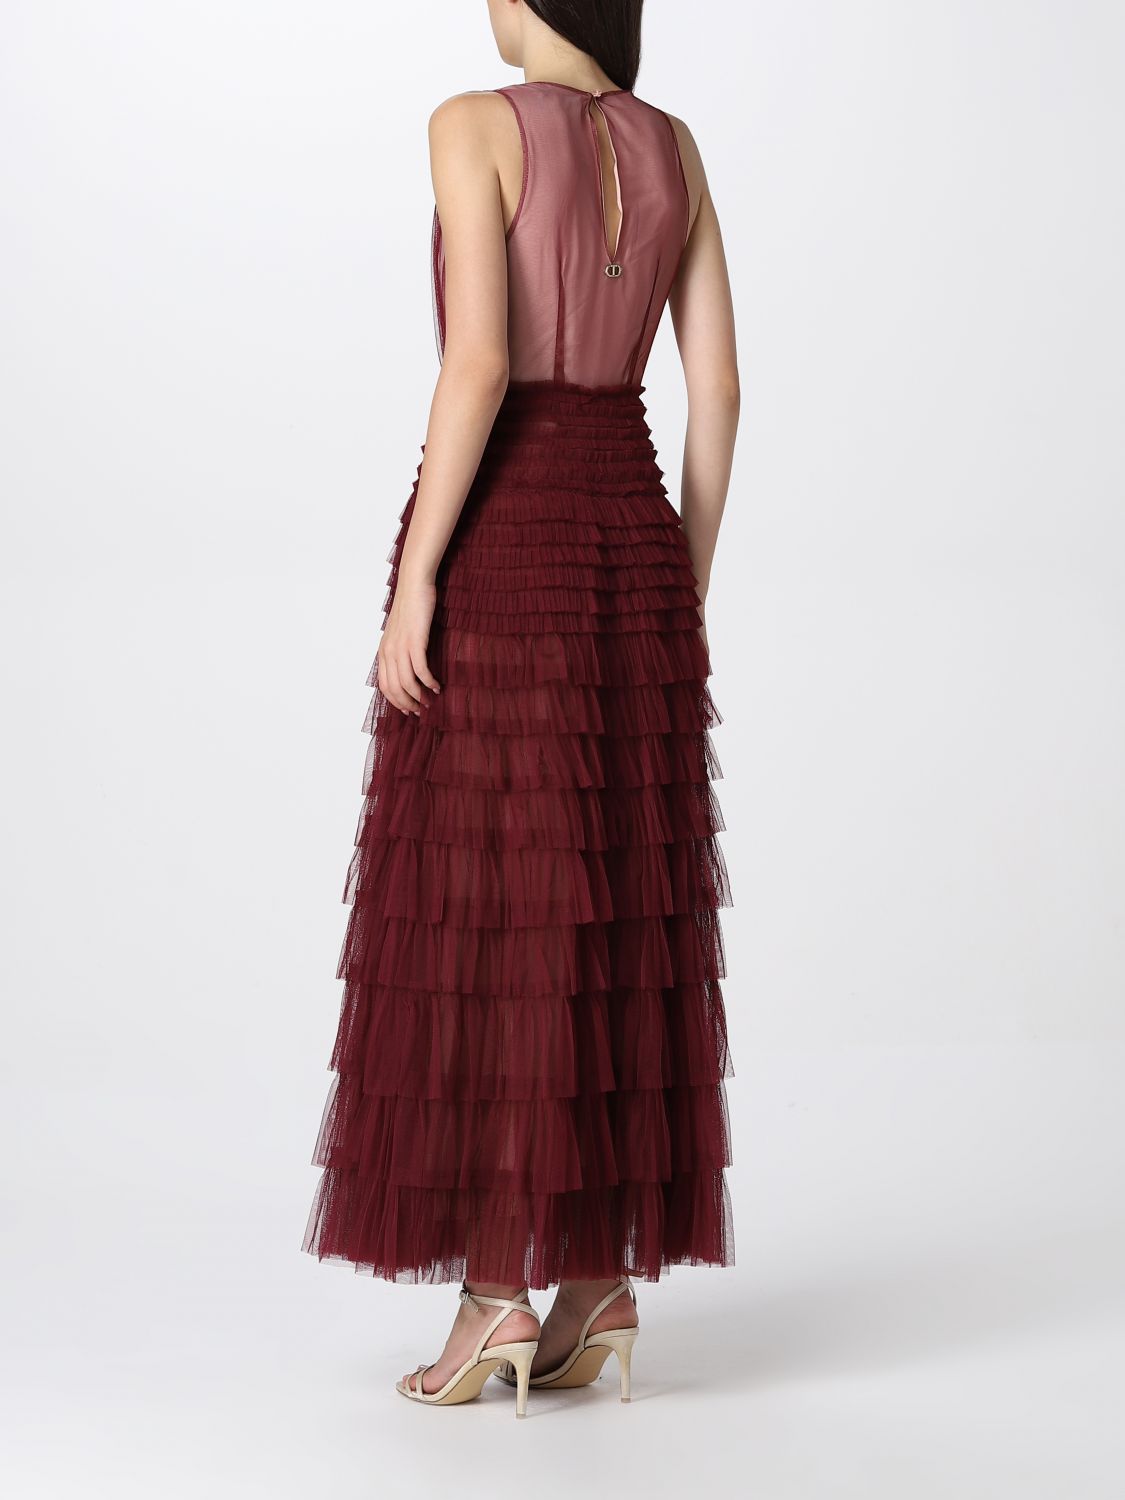 Dress Twinset: Twinset dress for women burgundy 2